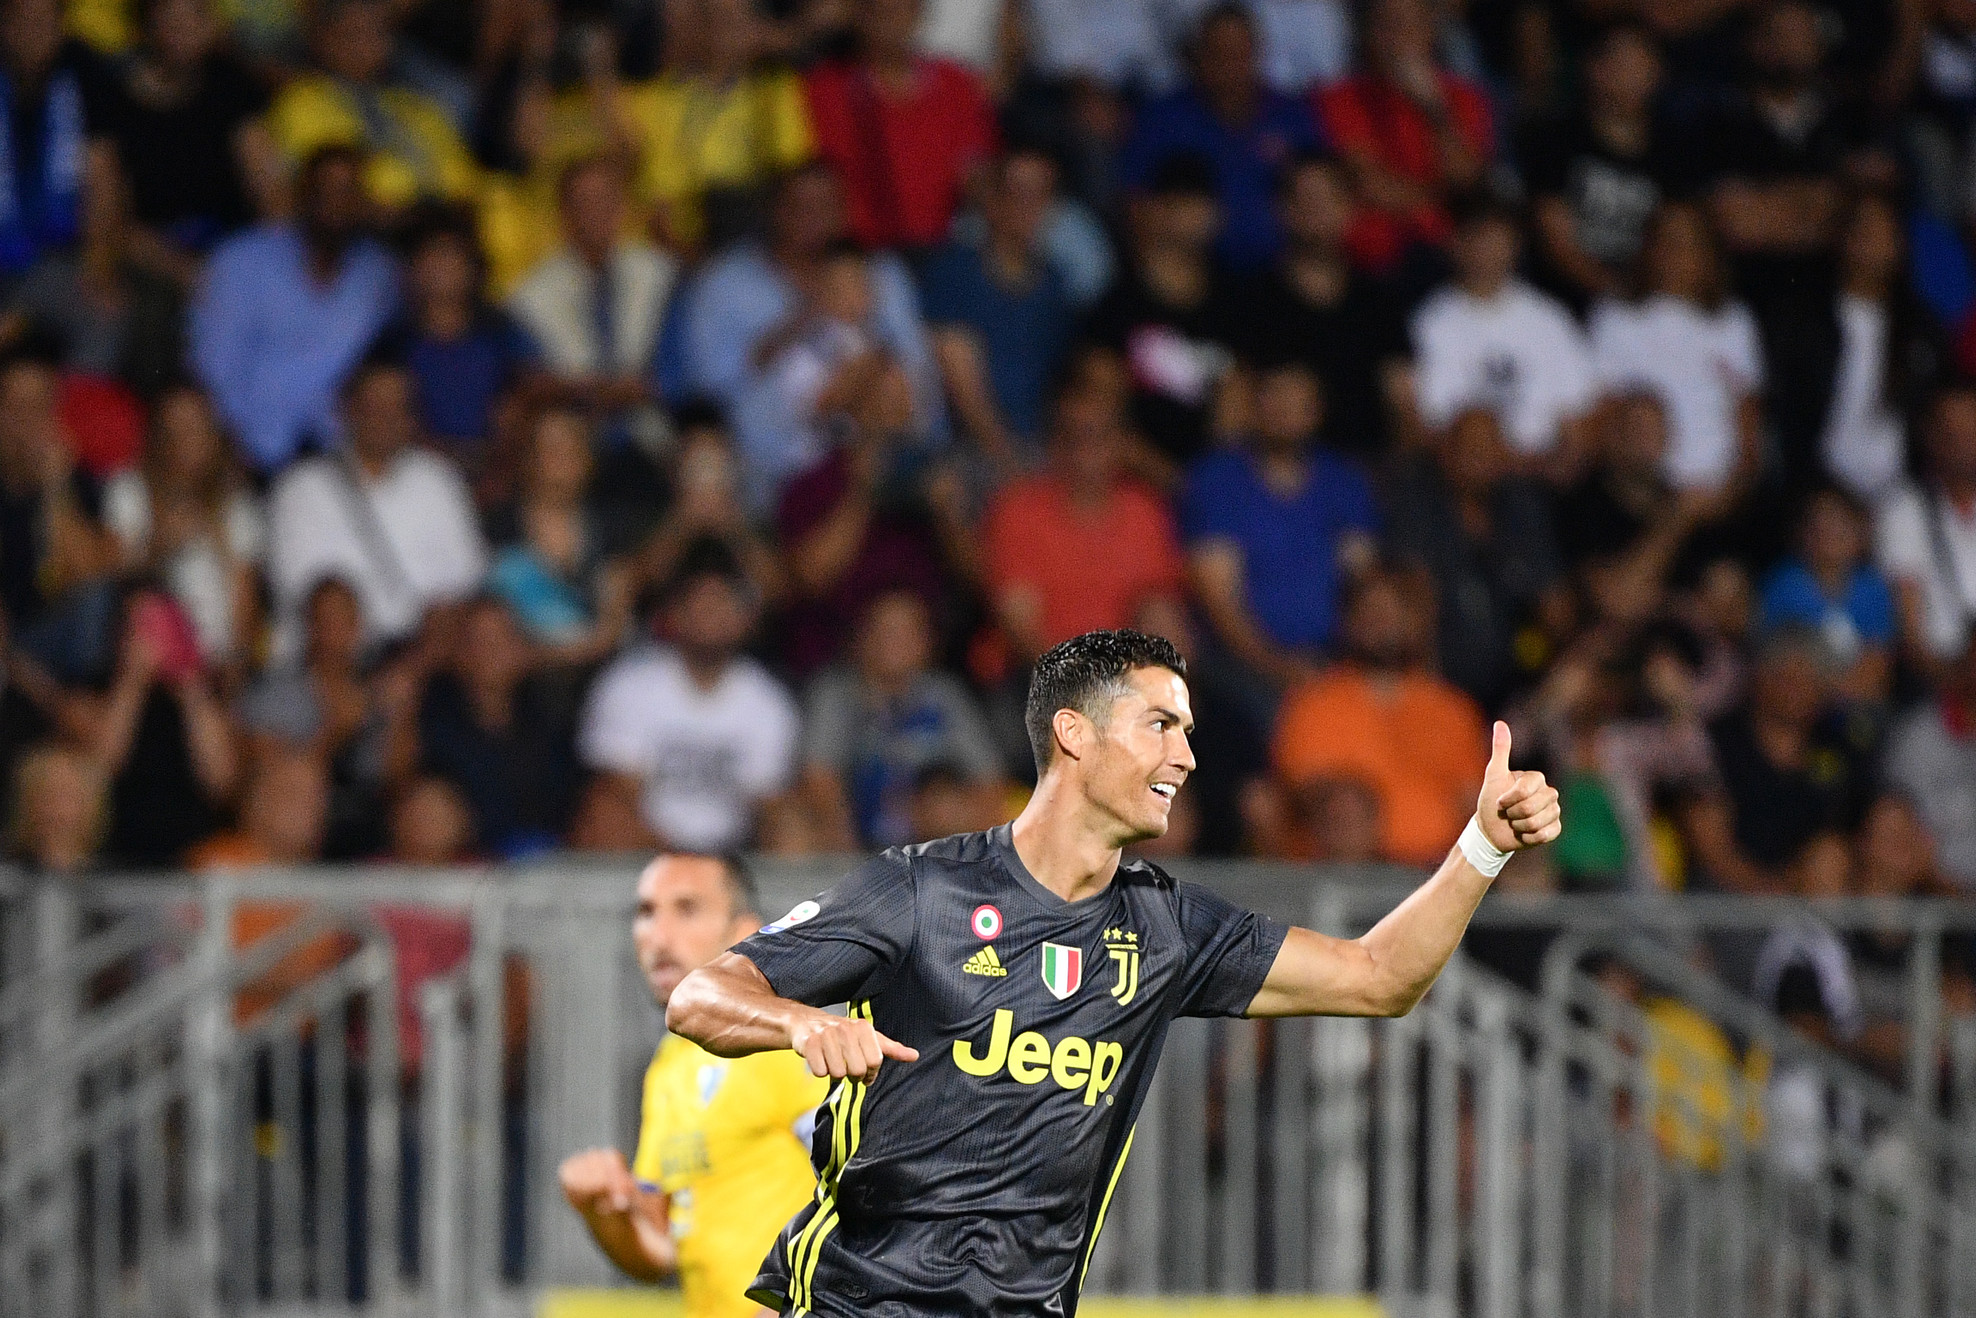 Frosinone-Juve, Ronaldo esulta sui social: “Un’altra vittoria, avanti così”